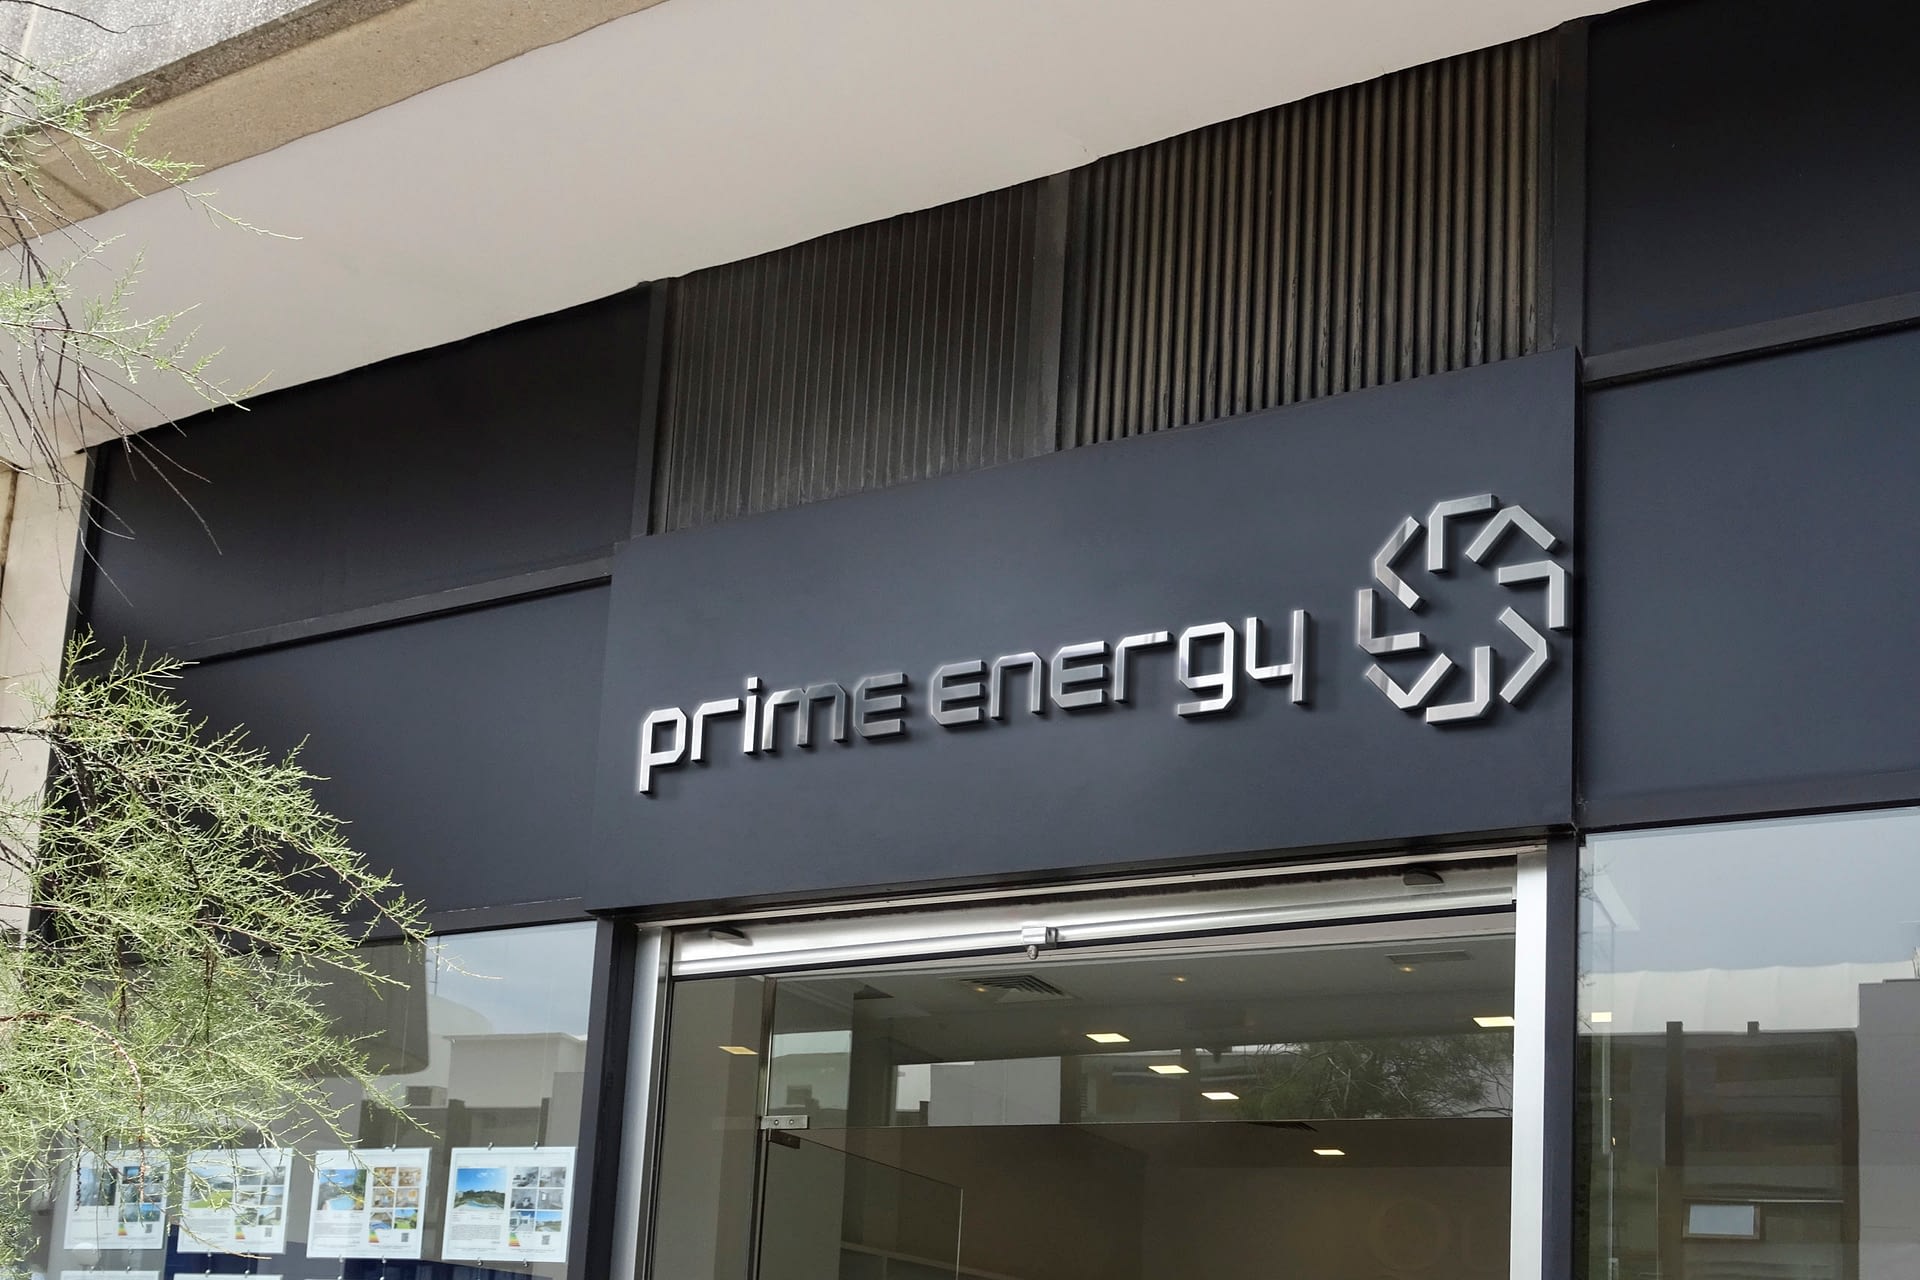 Prime-energy-office-scaled.jpg